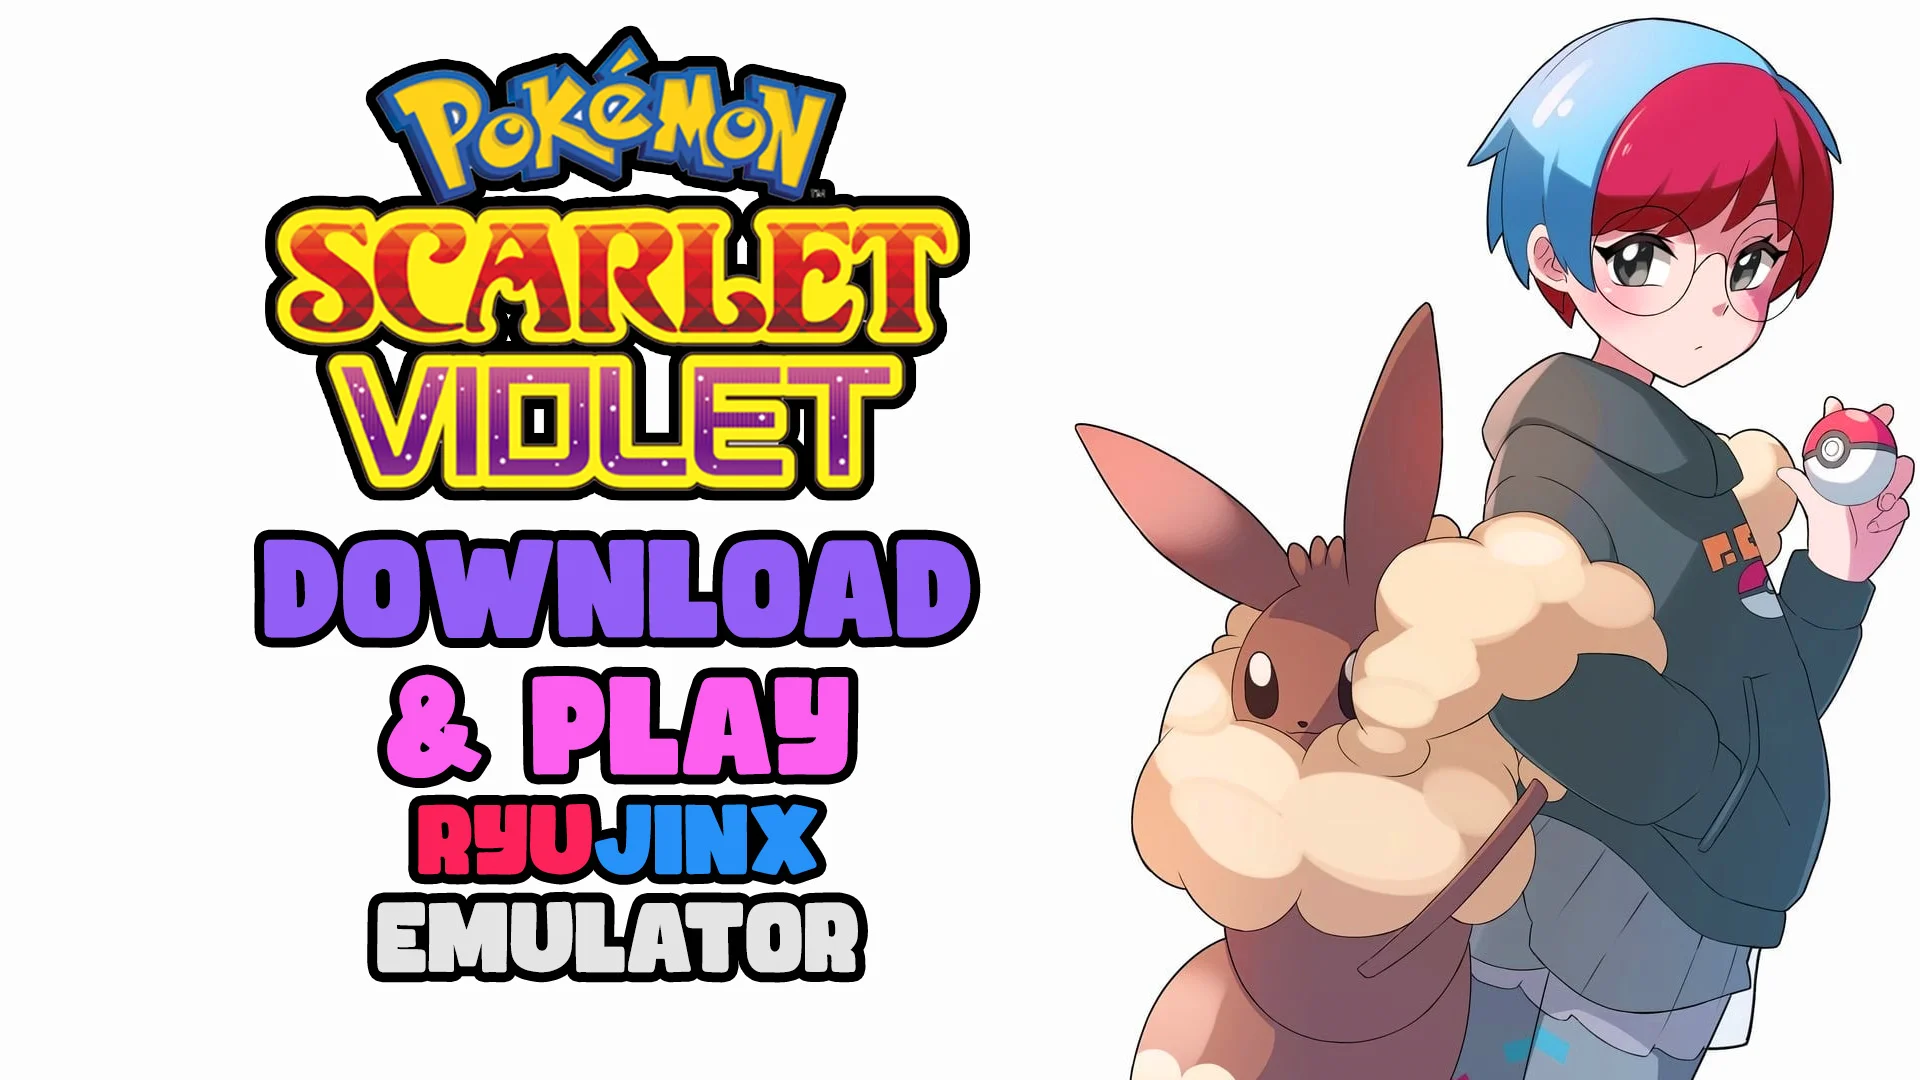 Divine on X: How to Download Pokemon Scarlet/Violet on PC Ryujinx Emulator   #ScarletViolet #Pokemon #PokemonScarletViolet  #PokemonScarlet #PokemonViolet  / X